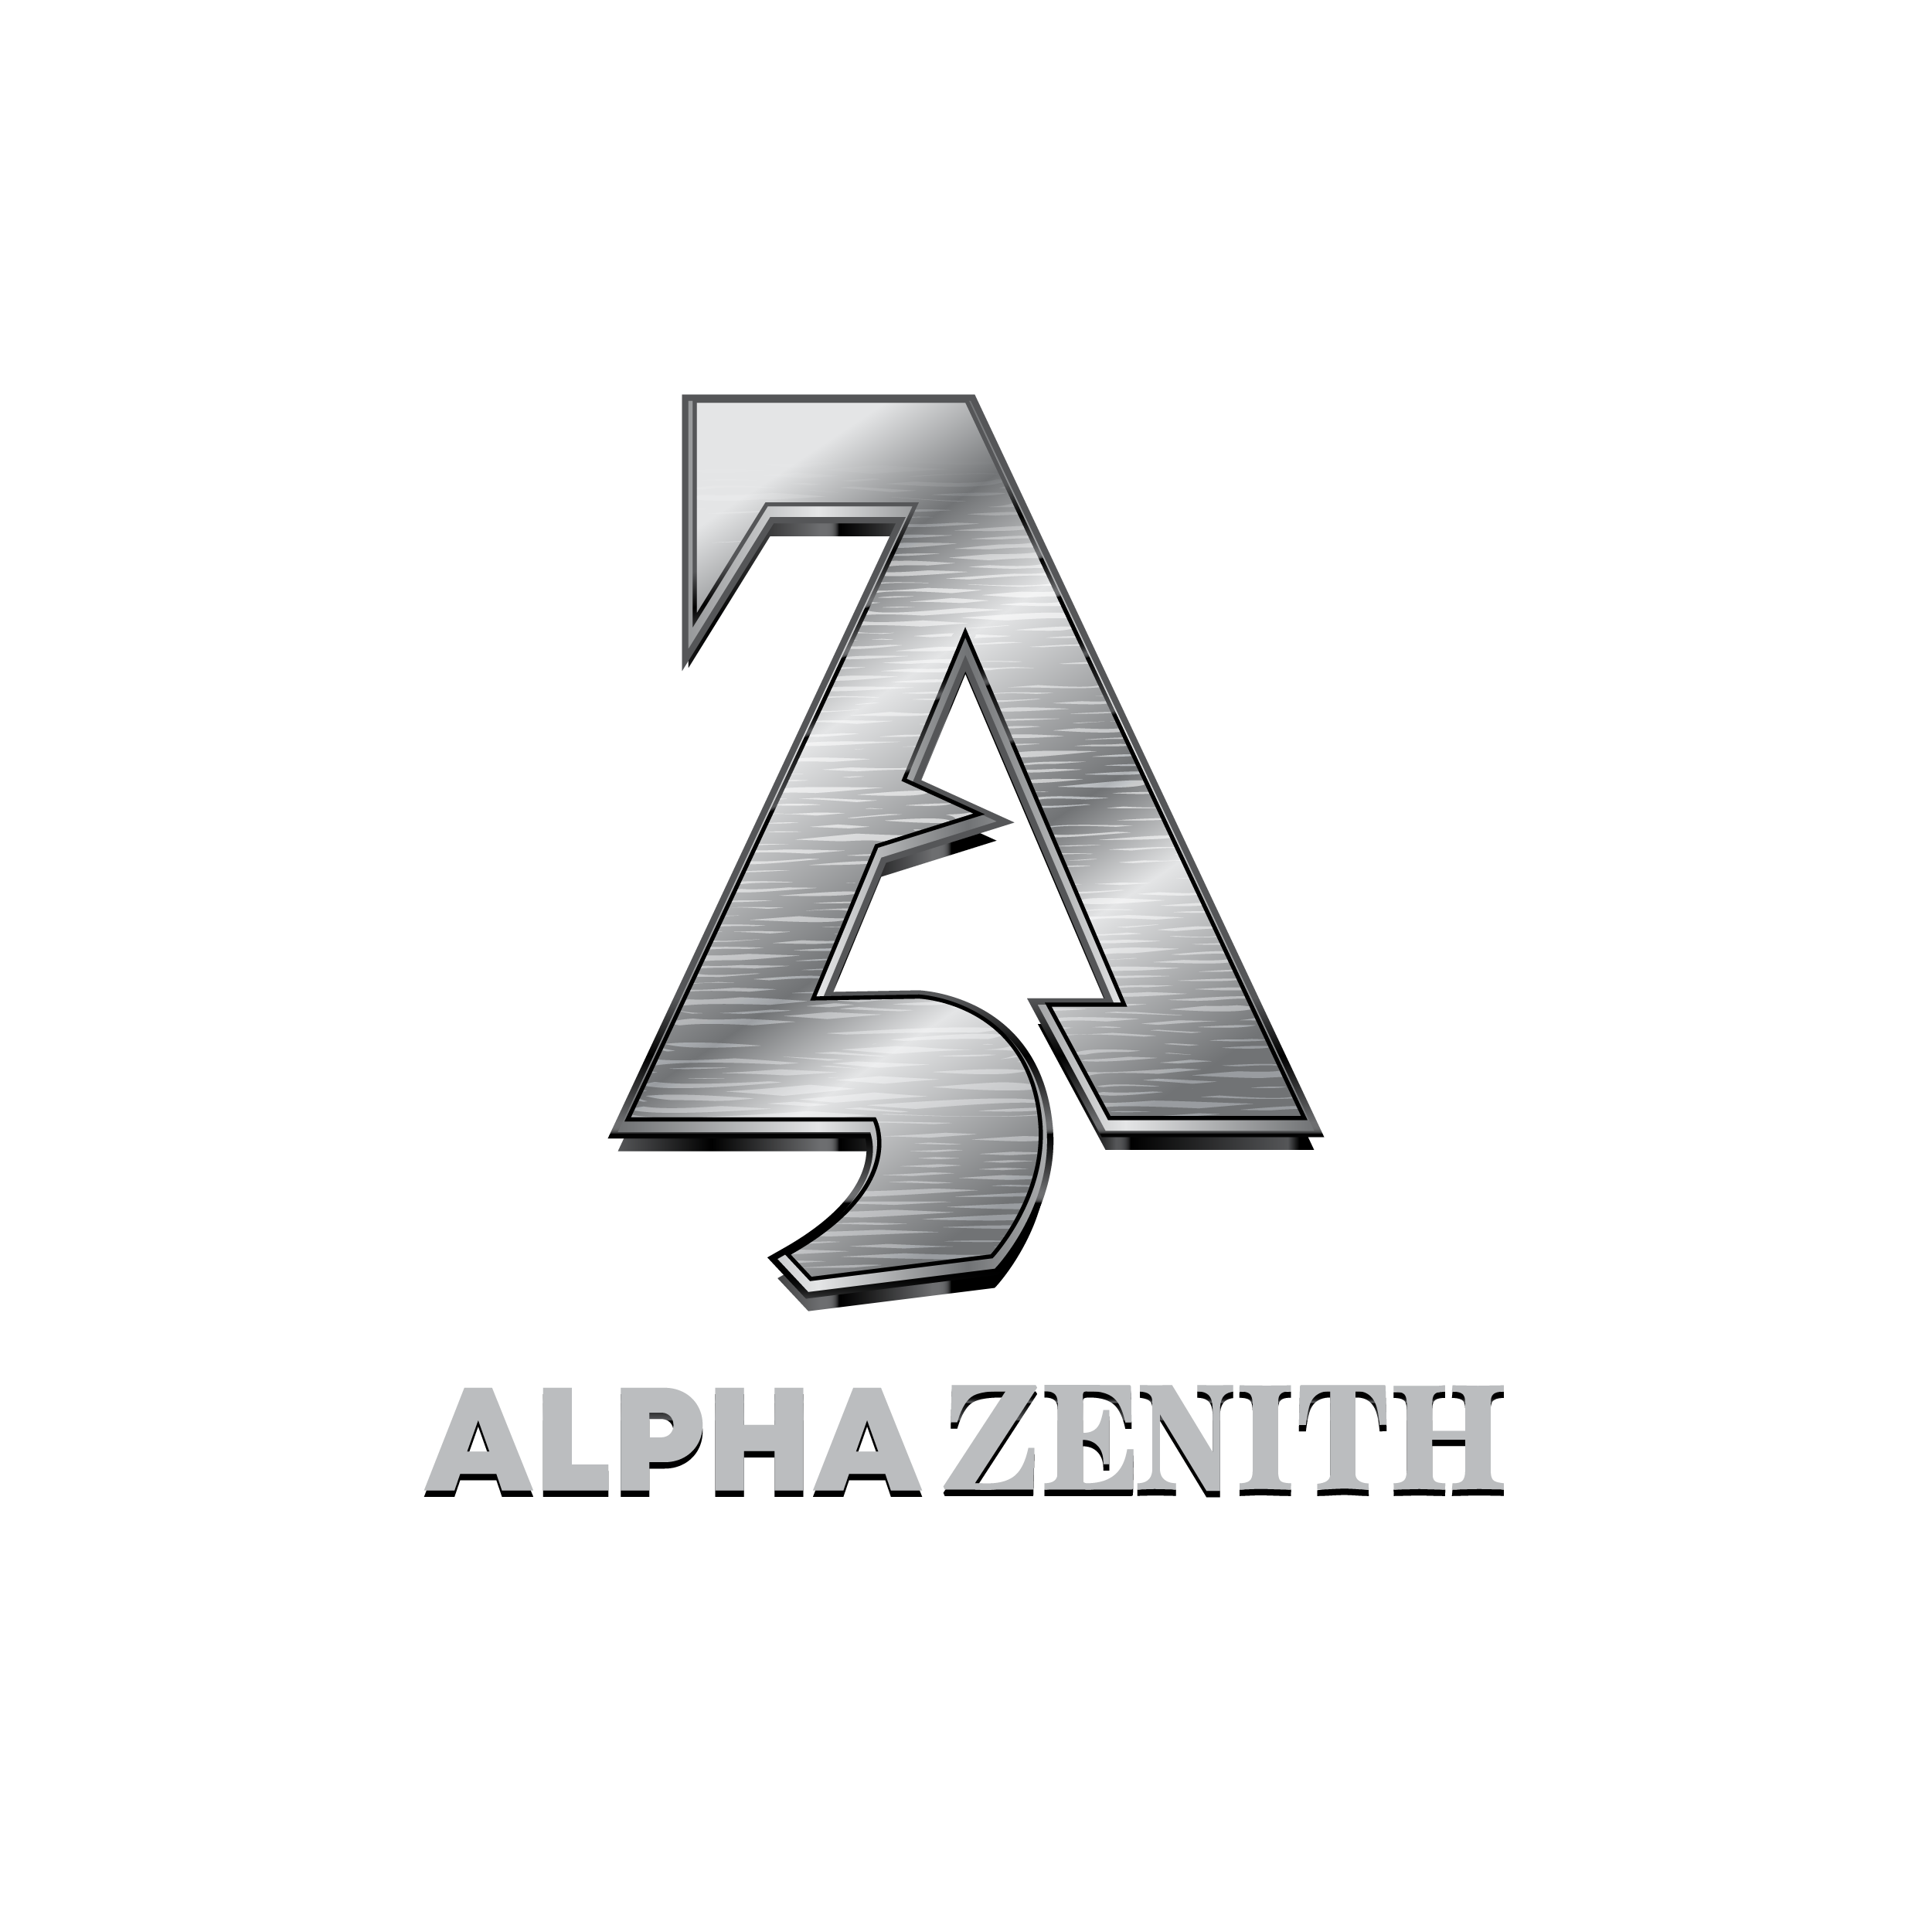 AlphaZenith LOGO